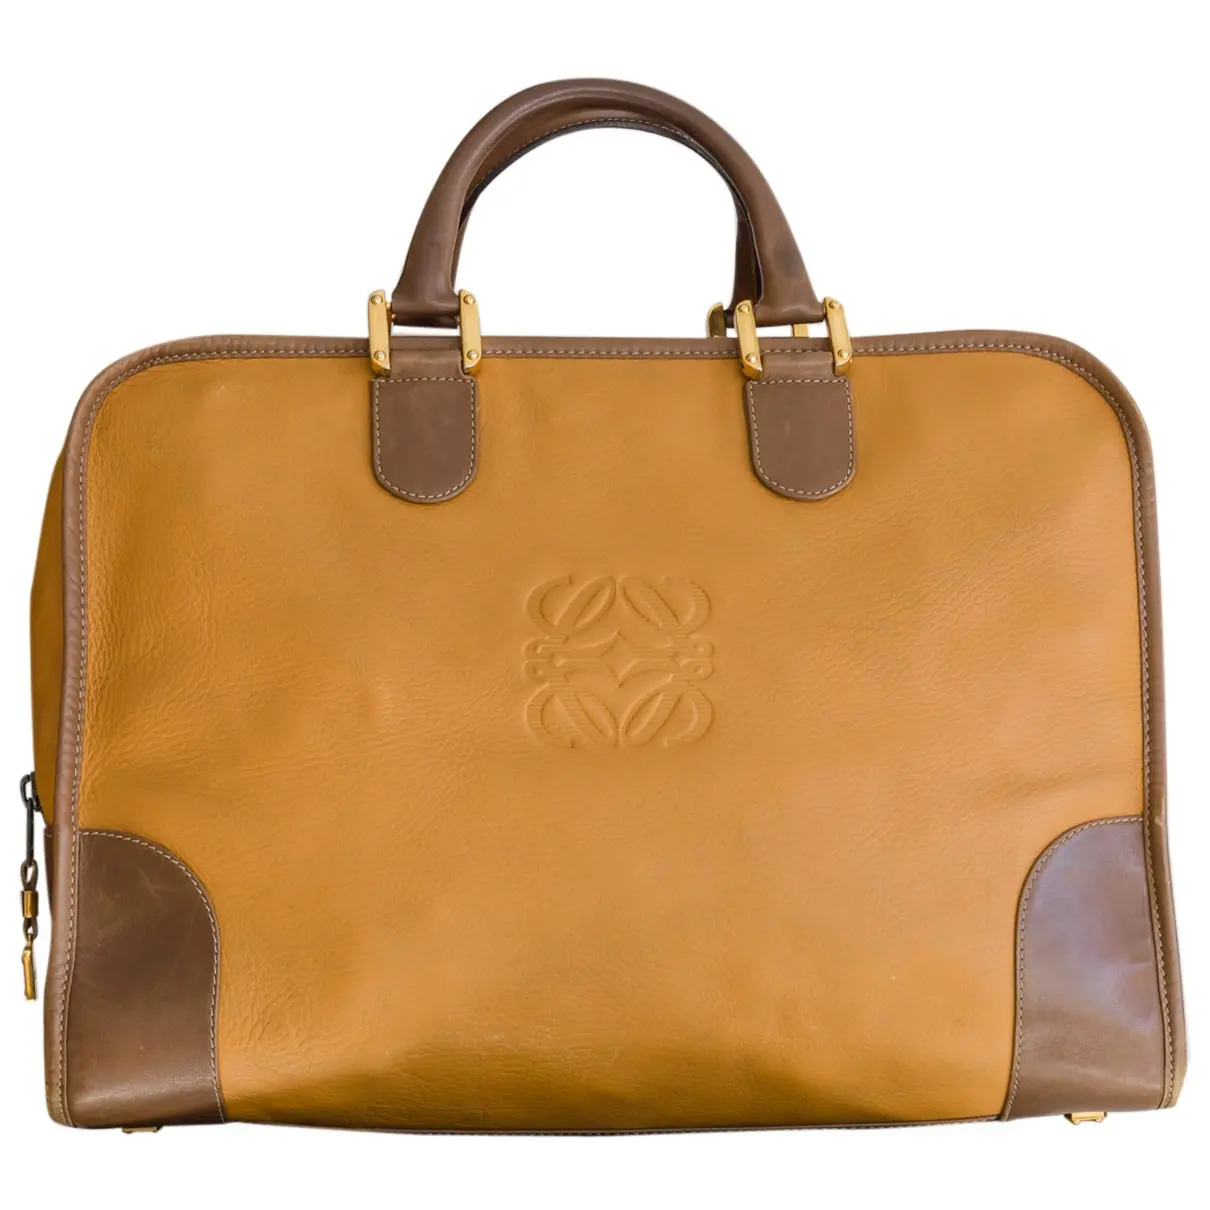 Amazona leather bowling bag Loewe - Vintage